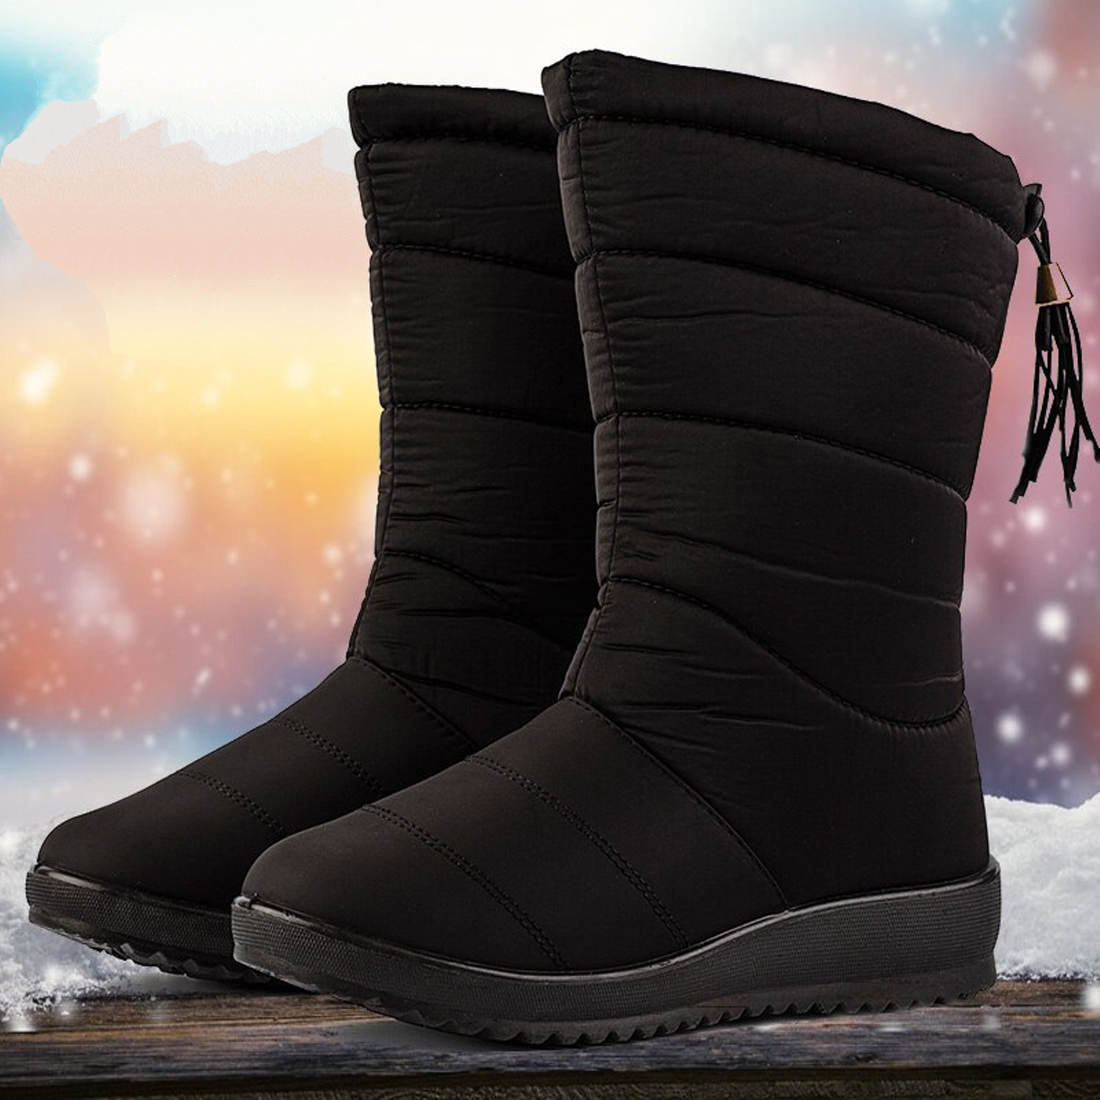 Women's Waterproof Warm Fur Snow Boots